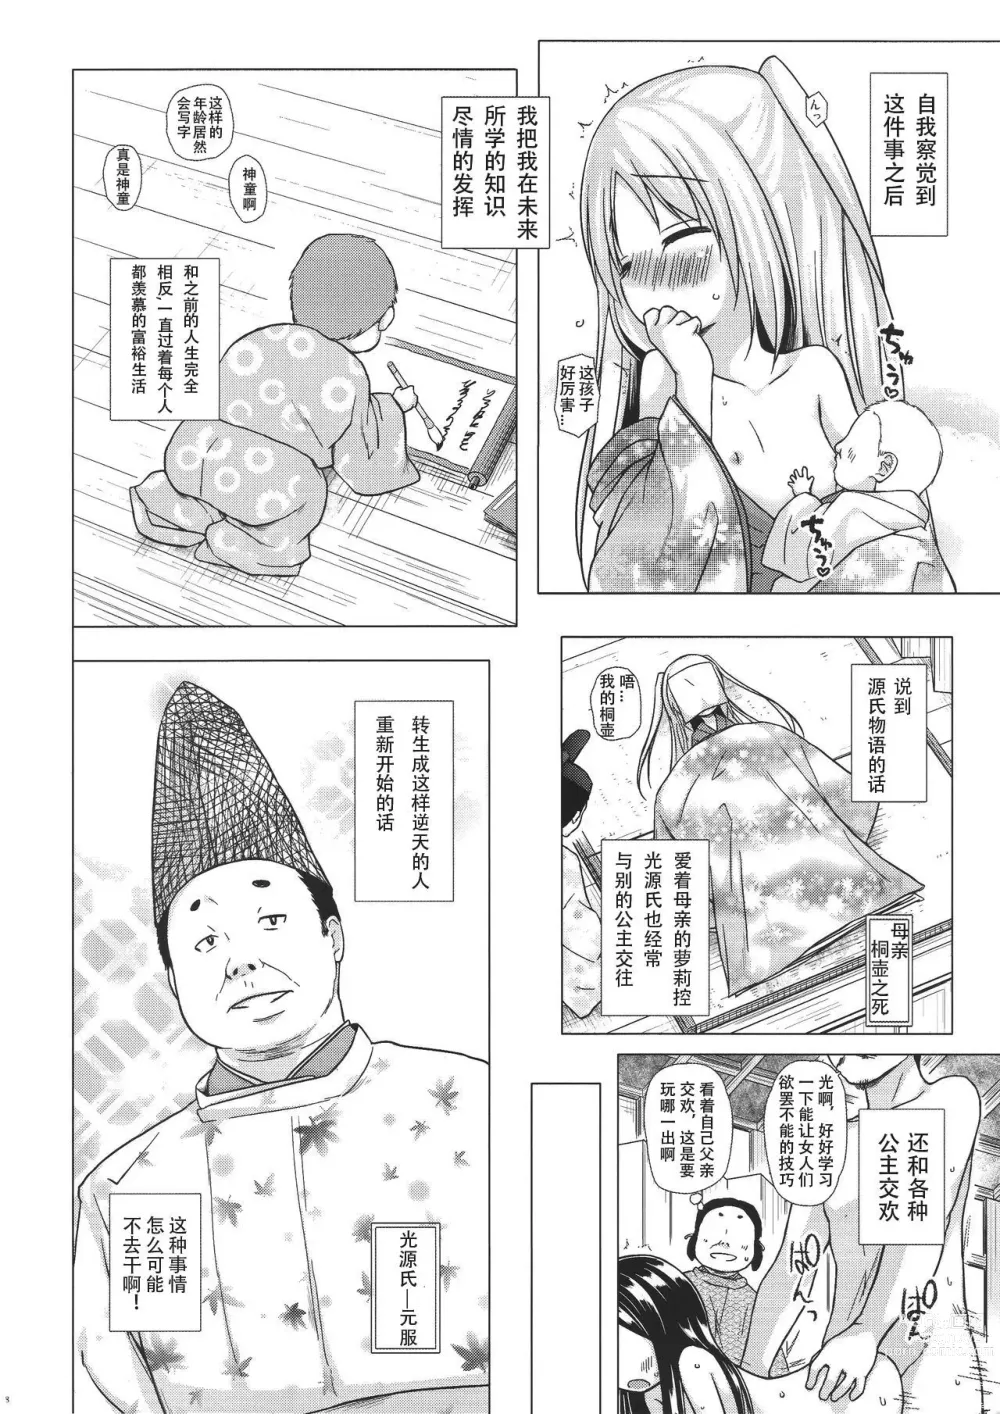 Page 7 of doujinshi yukino minato collection